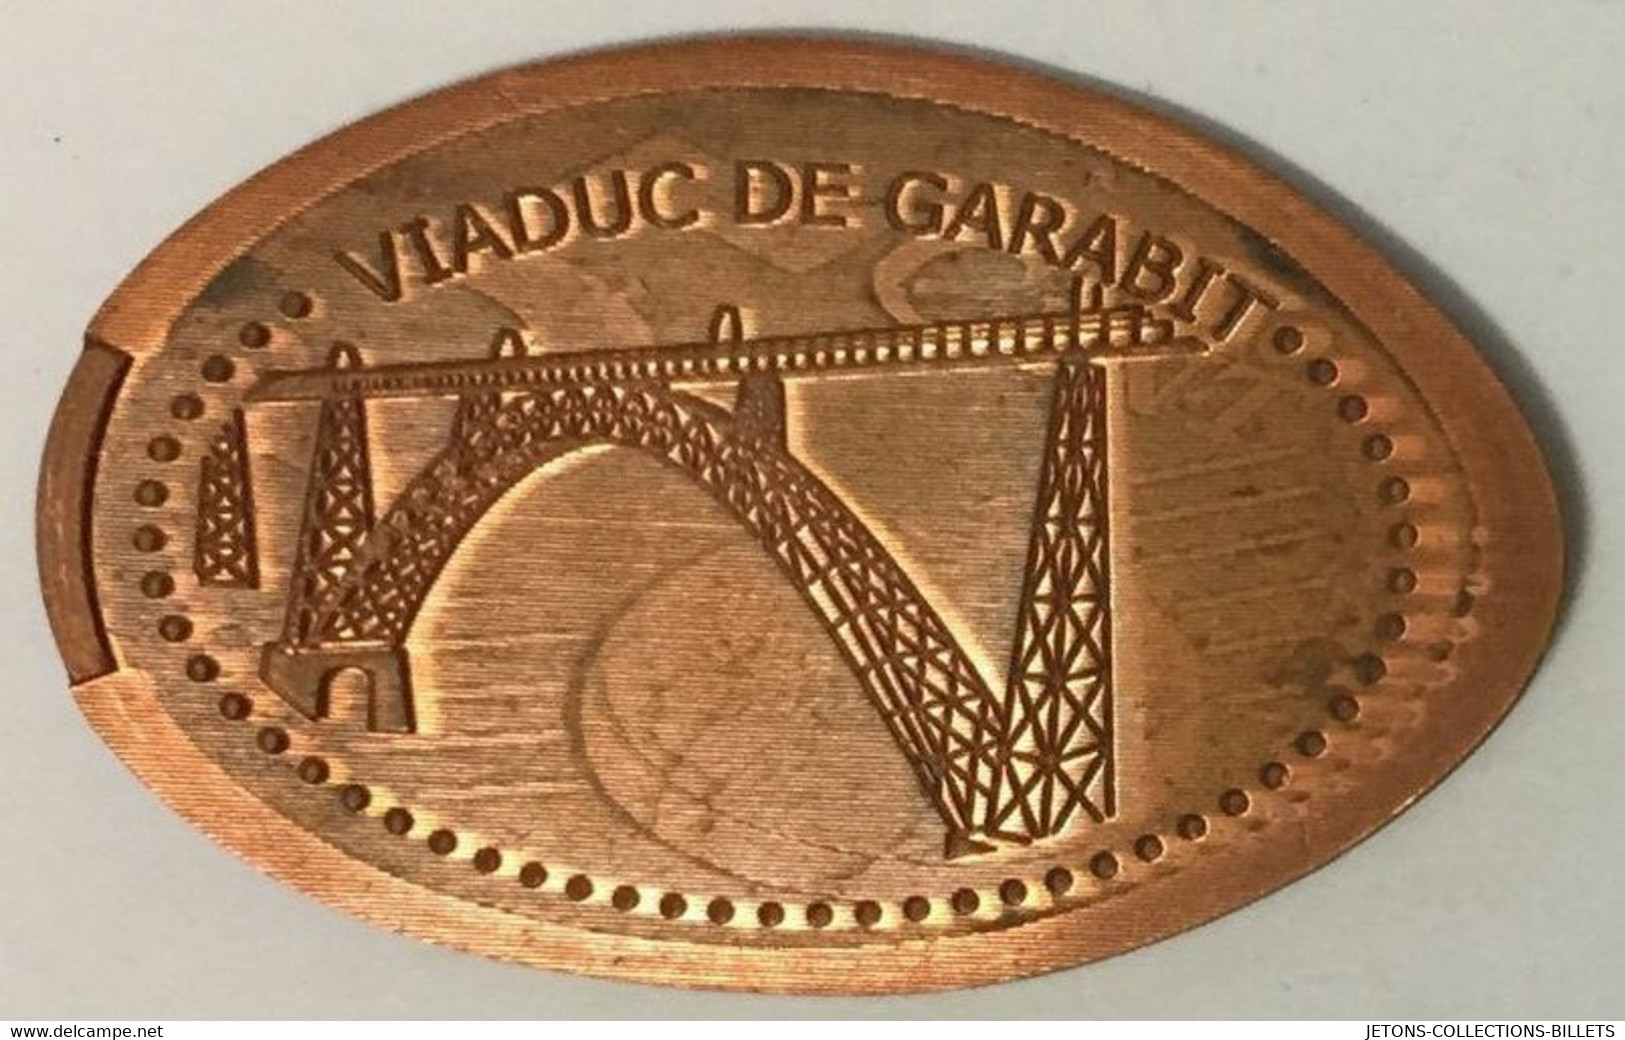 15 VIADUC DE GARABIT CONSTRUCTION PENNY ELONGATED COINS 1 PIÈCE ÉCRASÉE TOURISTIQUE MEDALS TOKENS MONNAIE - Souvenirmunten (elongated Coins)